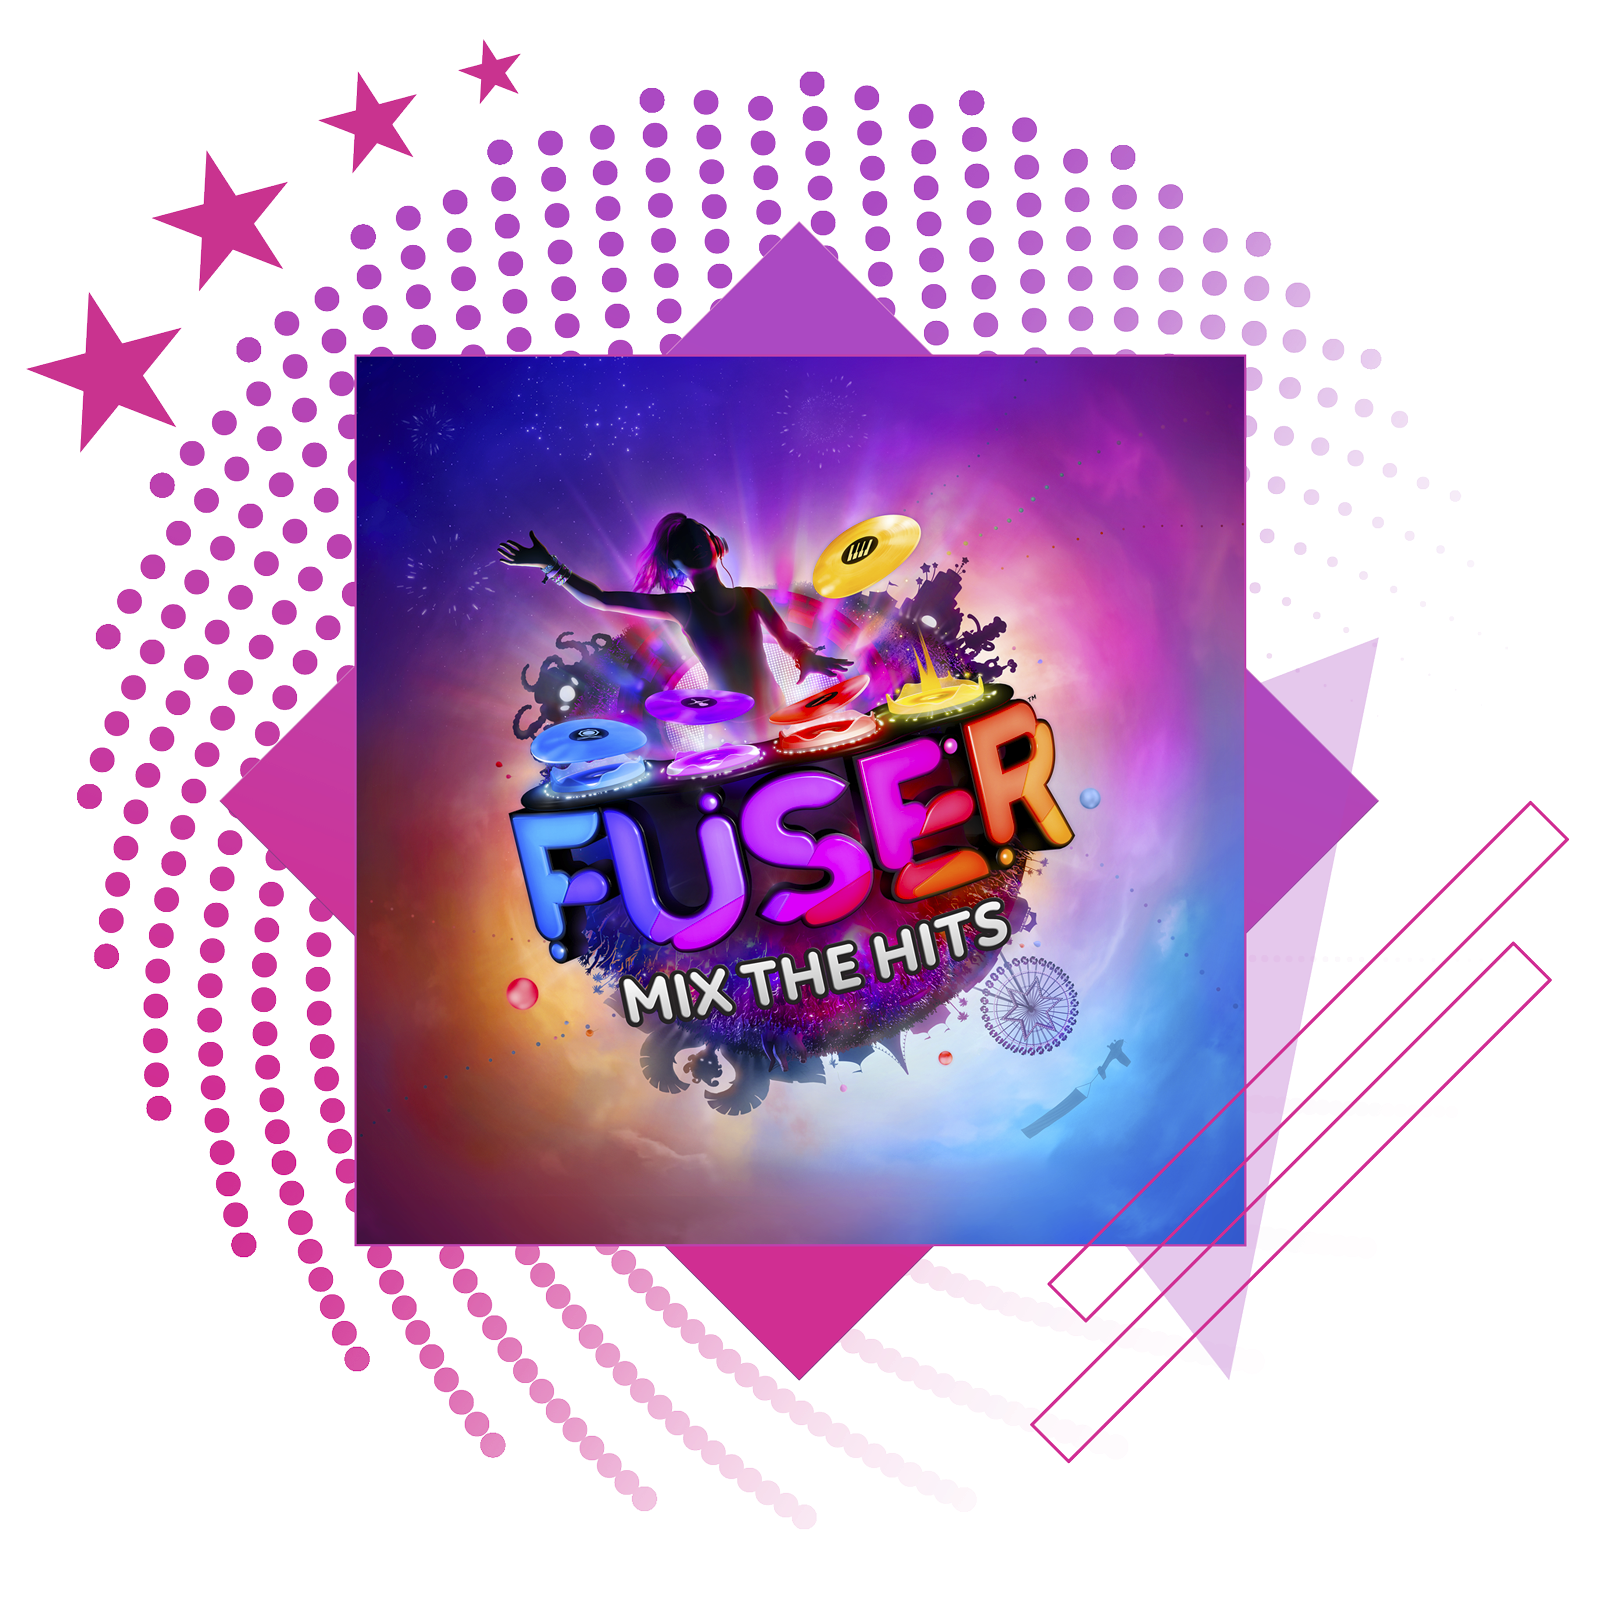 Image de présentation des meilleurs jeux de rythme, avec des illustrations et du gameplay clés de Fuser.